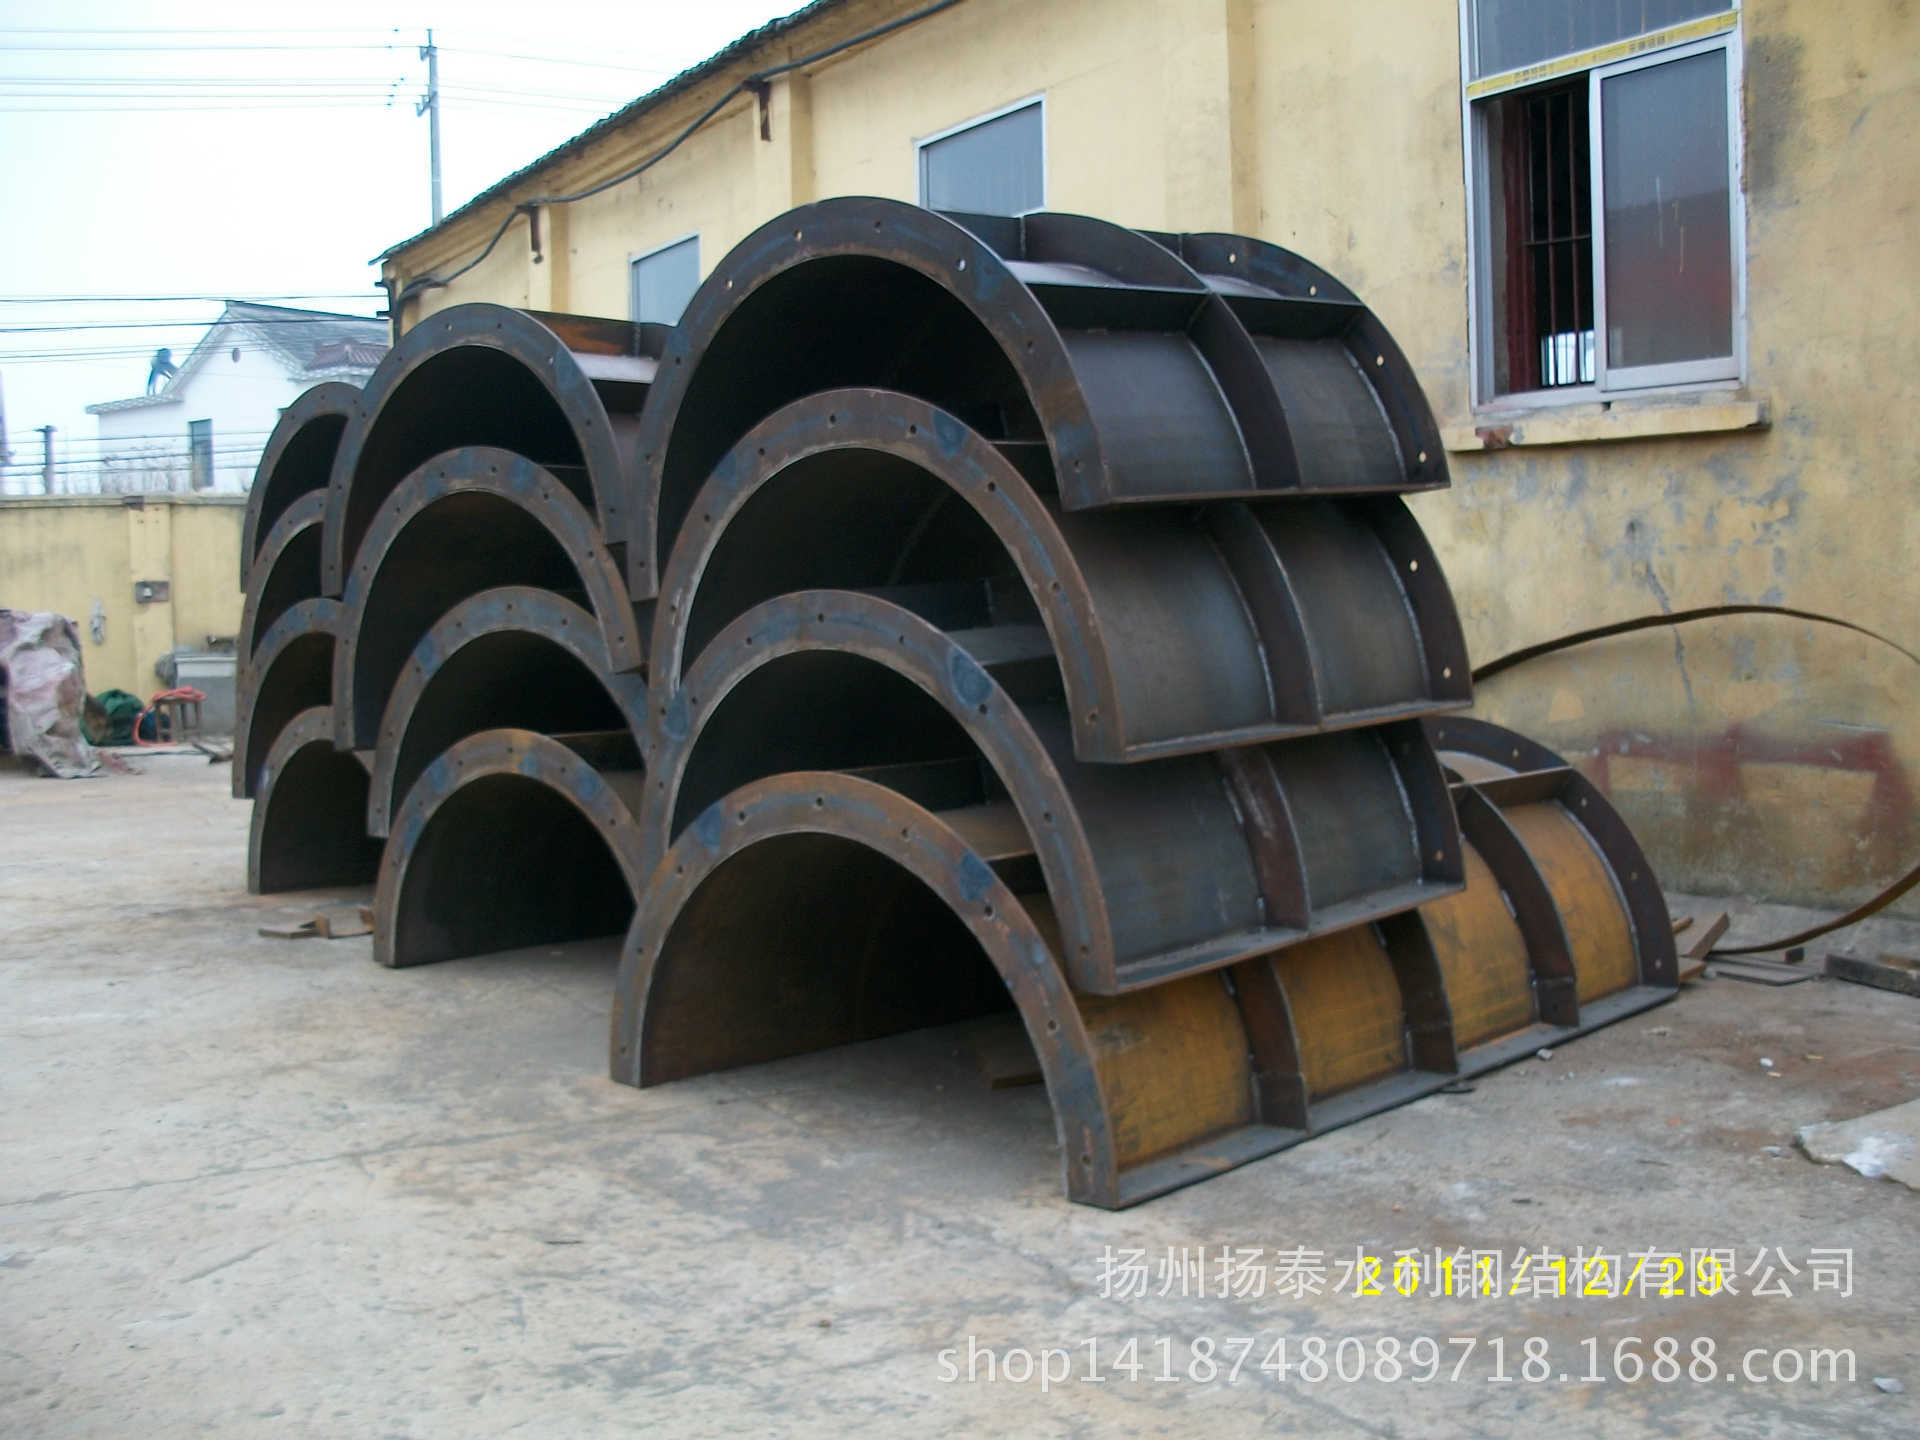 弧形钢模板 扬州扬泰水利钢结构有限公司直供q235材质弧形钢模板